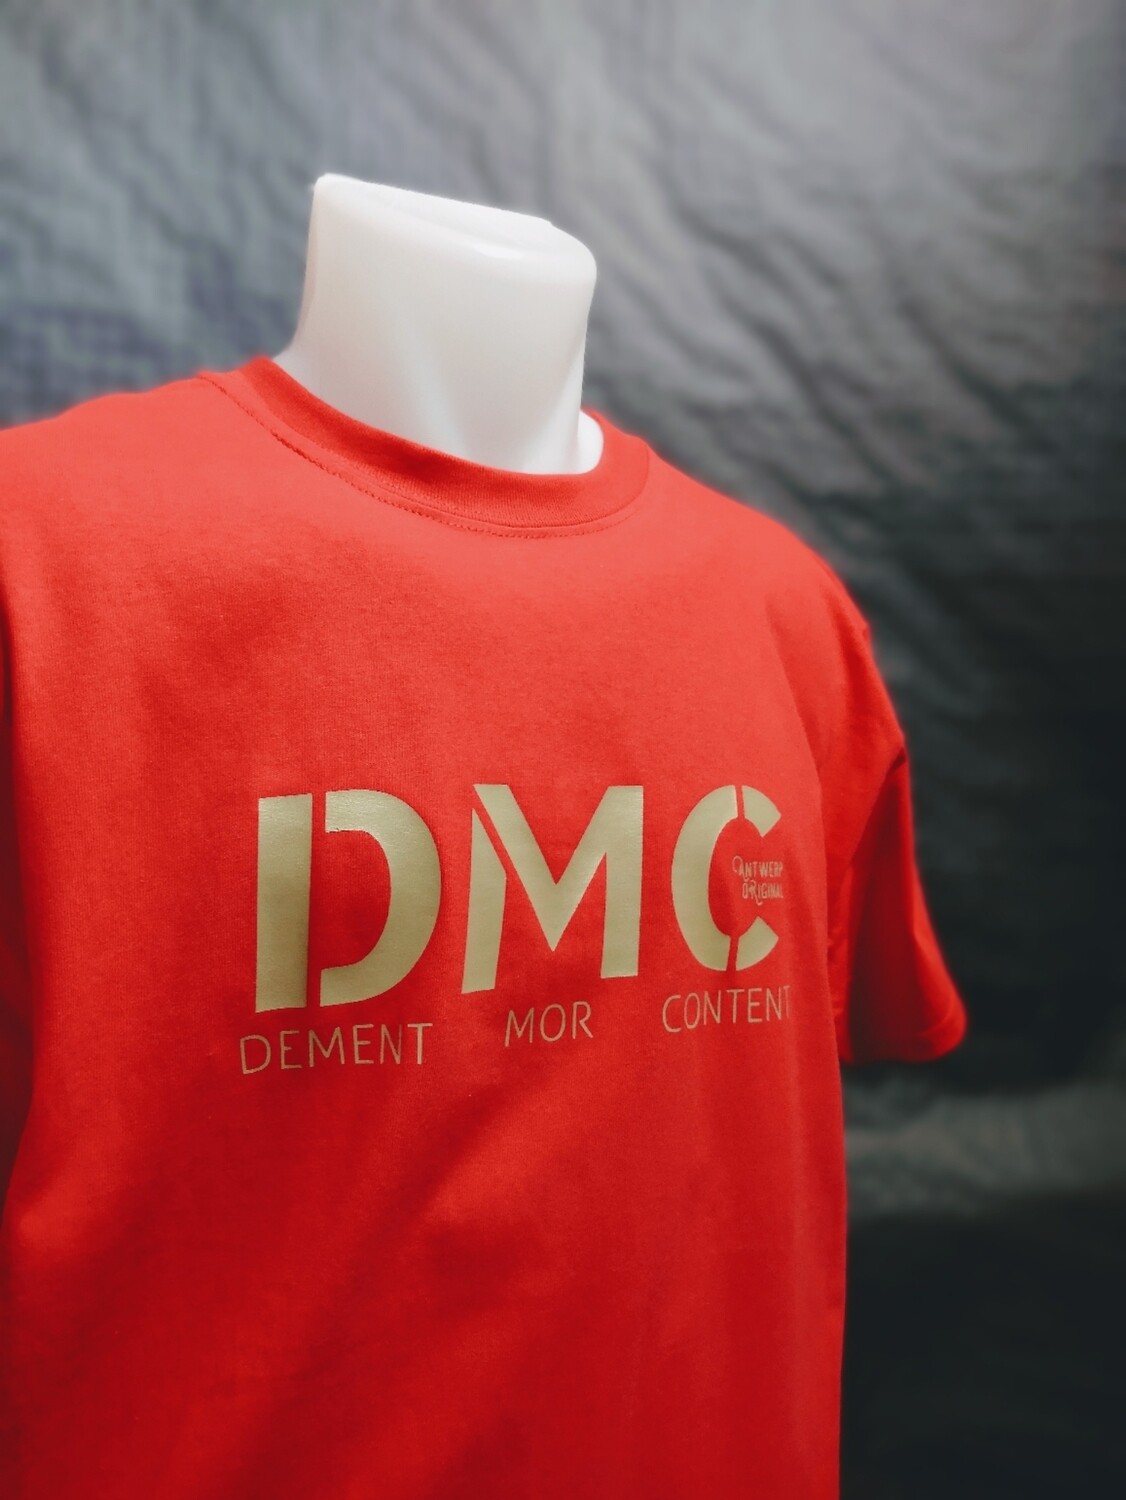 T shirt - Dement Mor Content